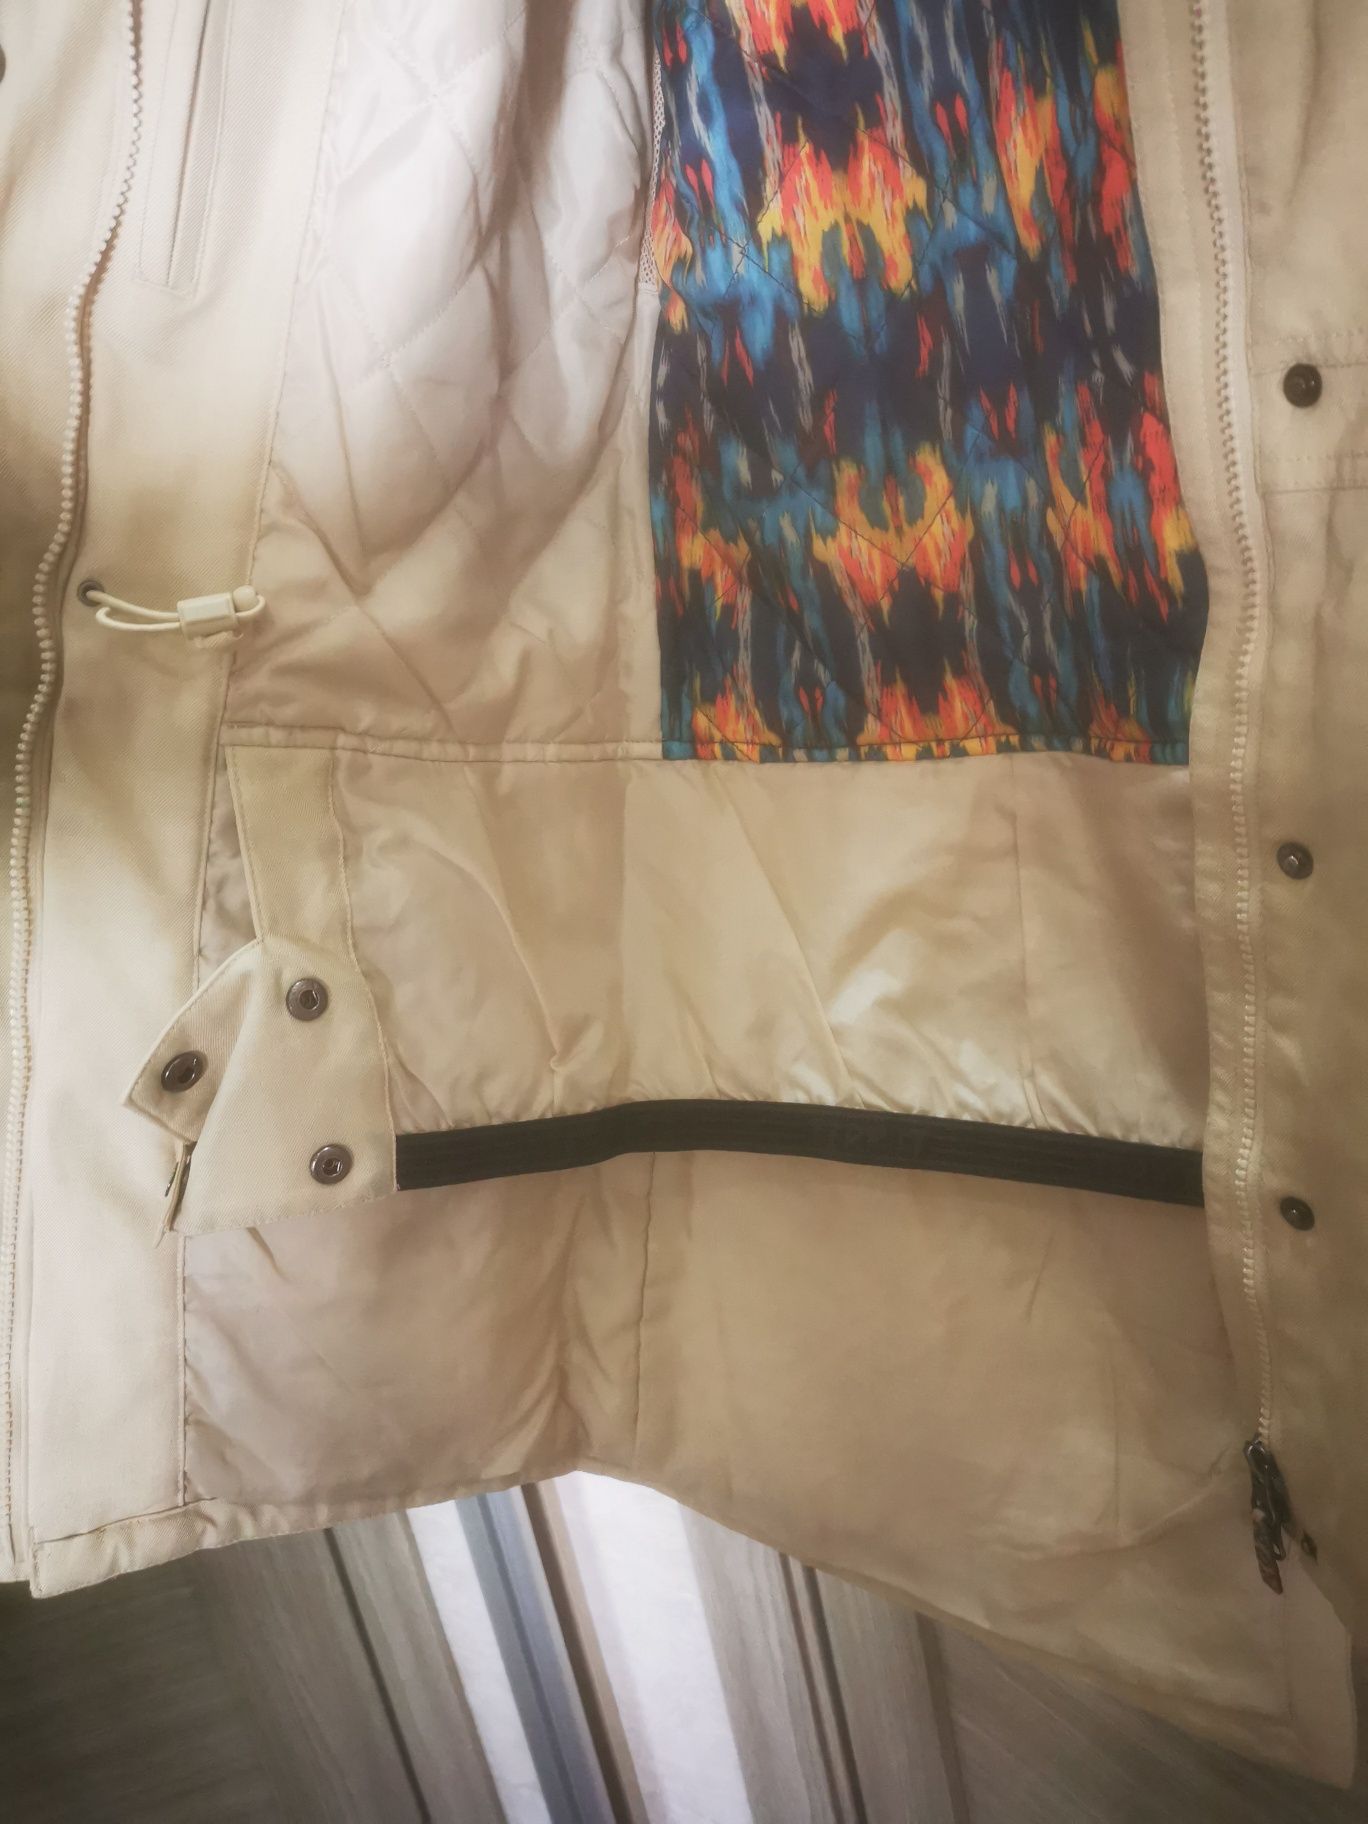 Куртка Termit, зимняя, женская